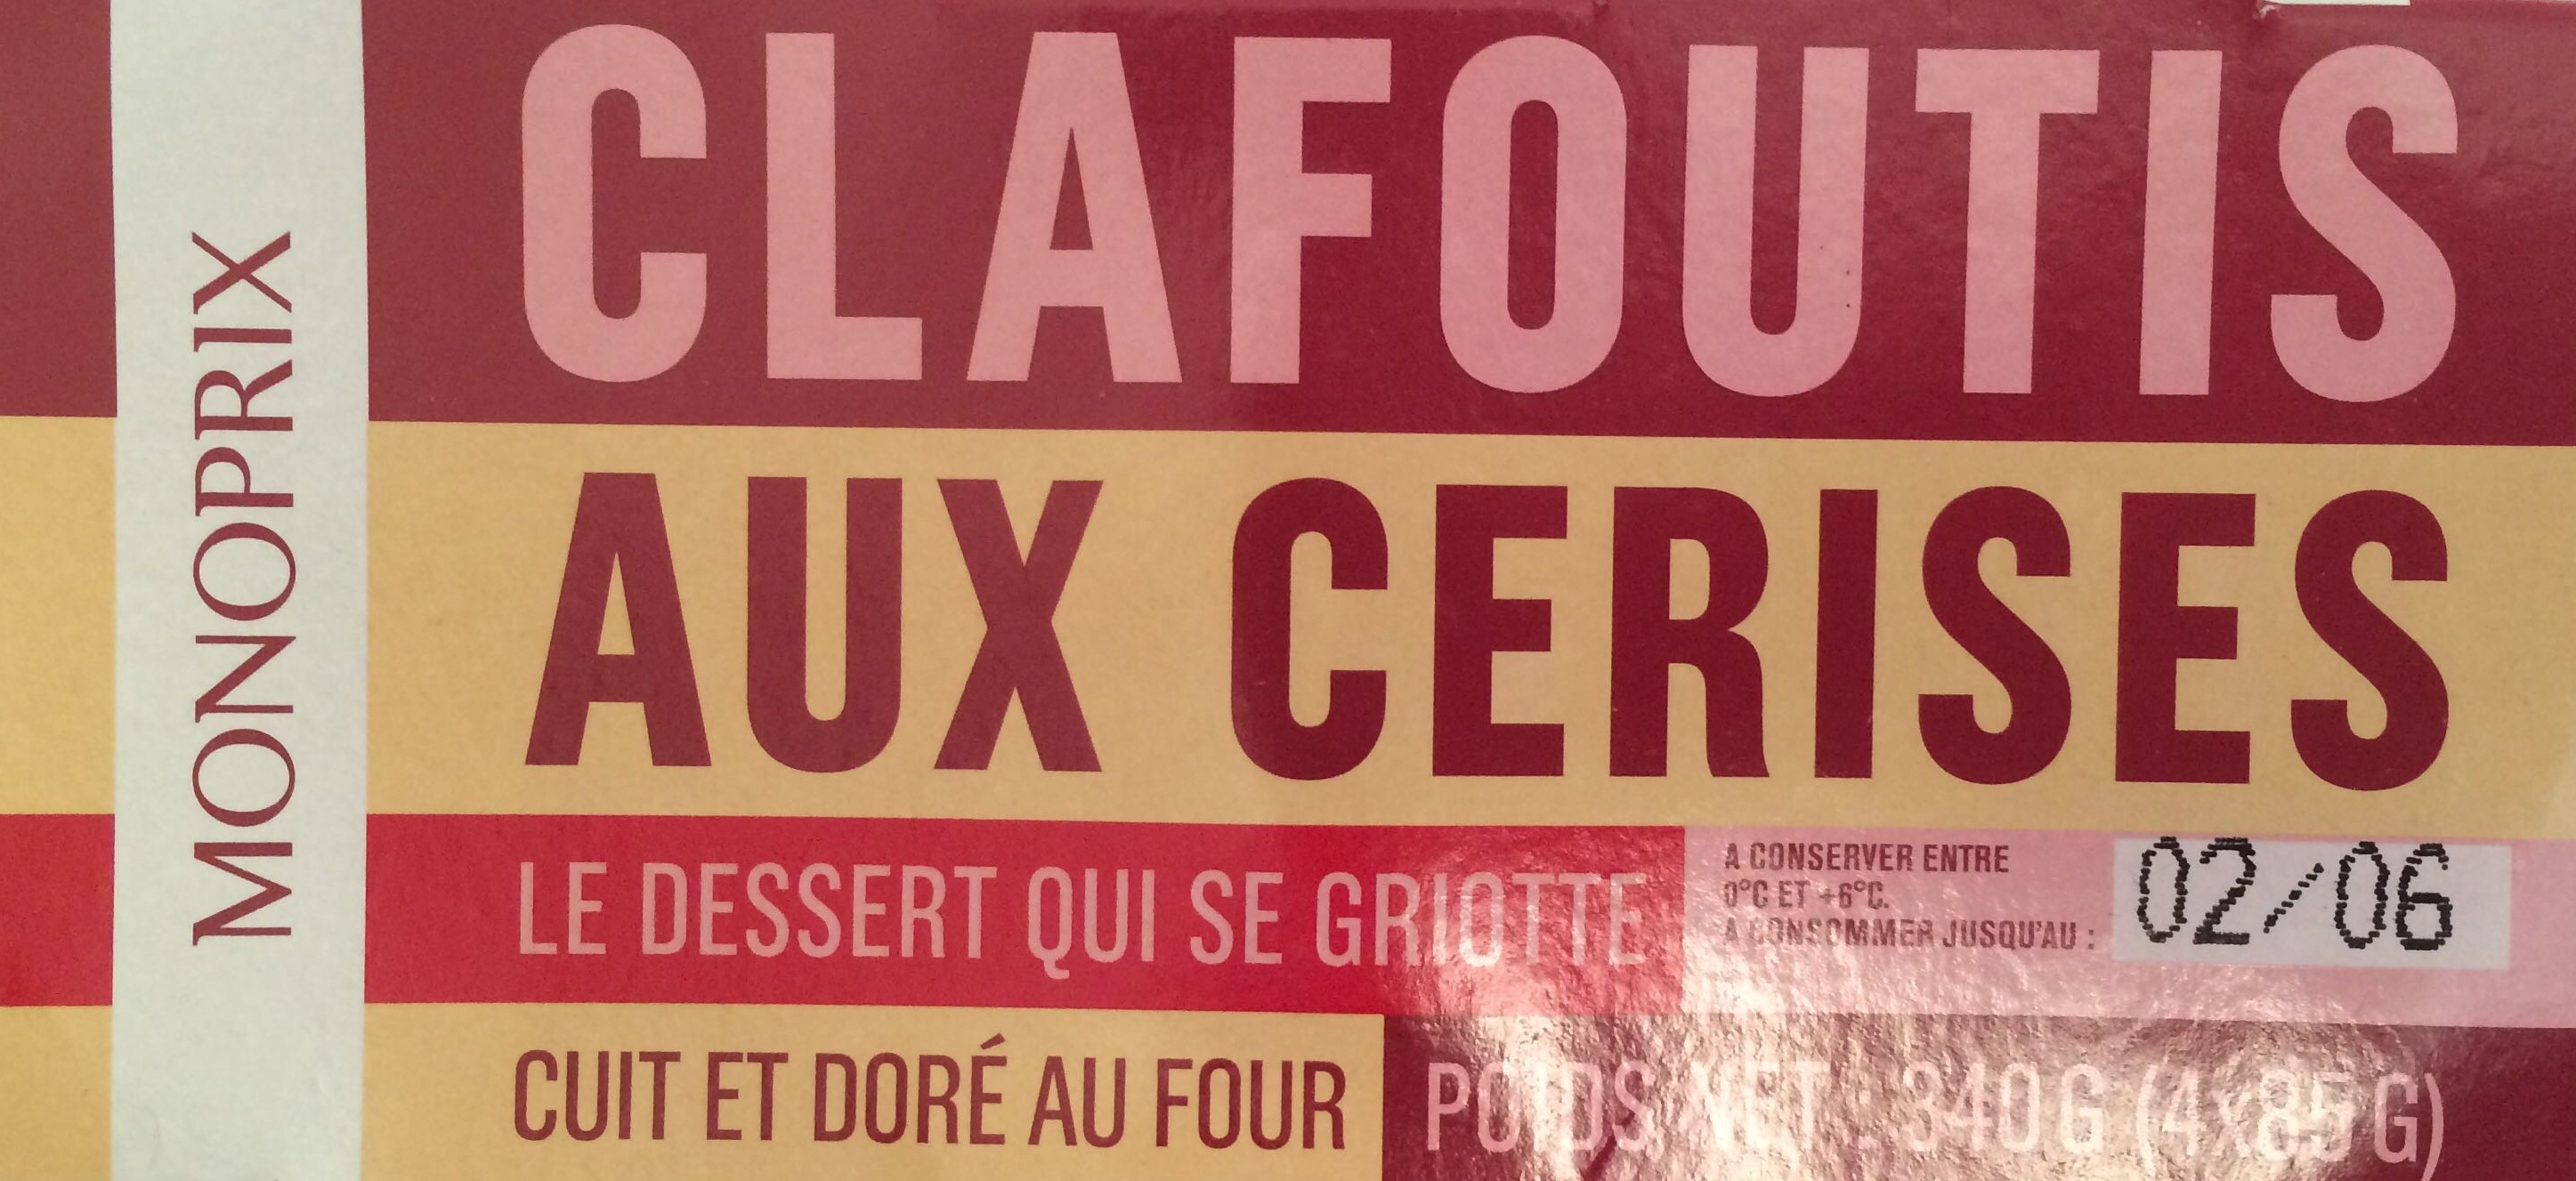 Clafoutis aux cerises - Producto - fr